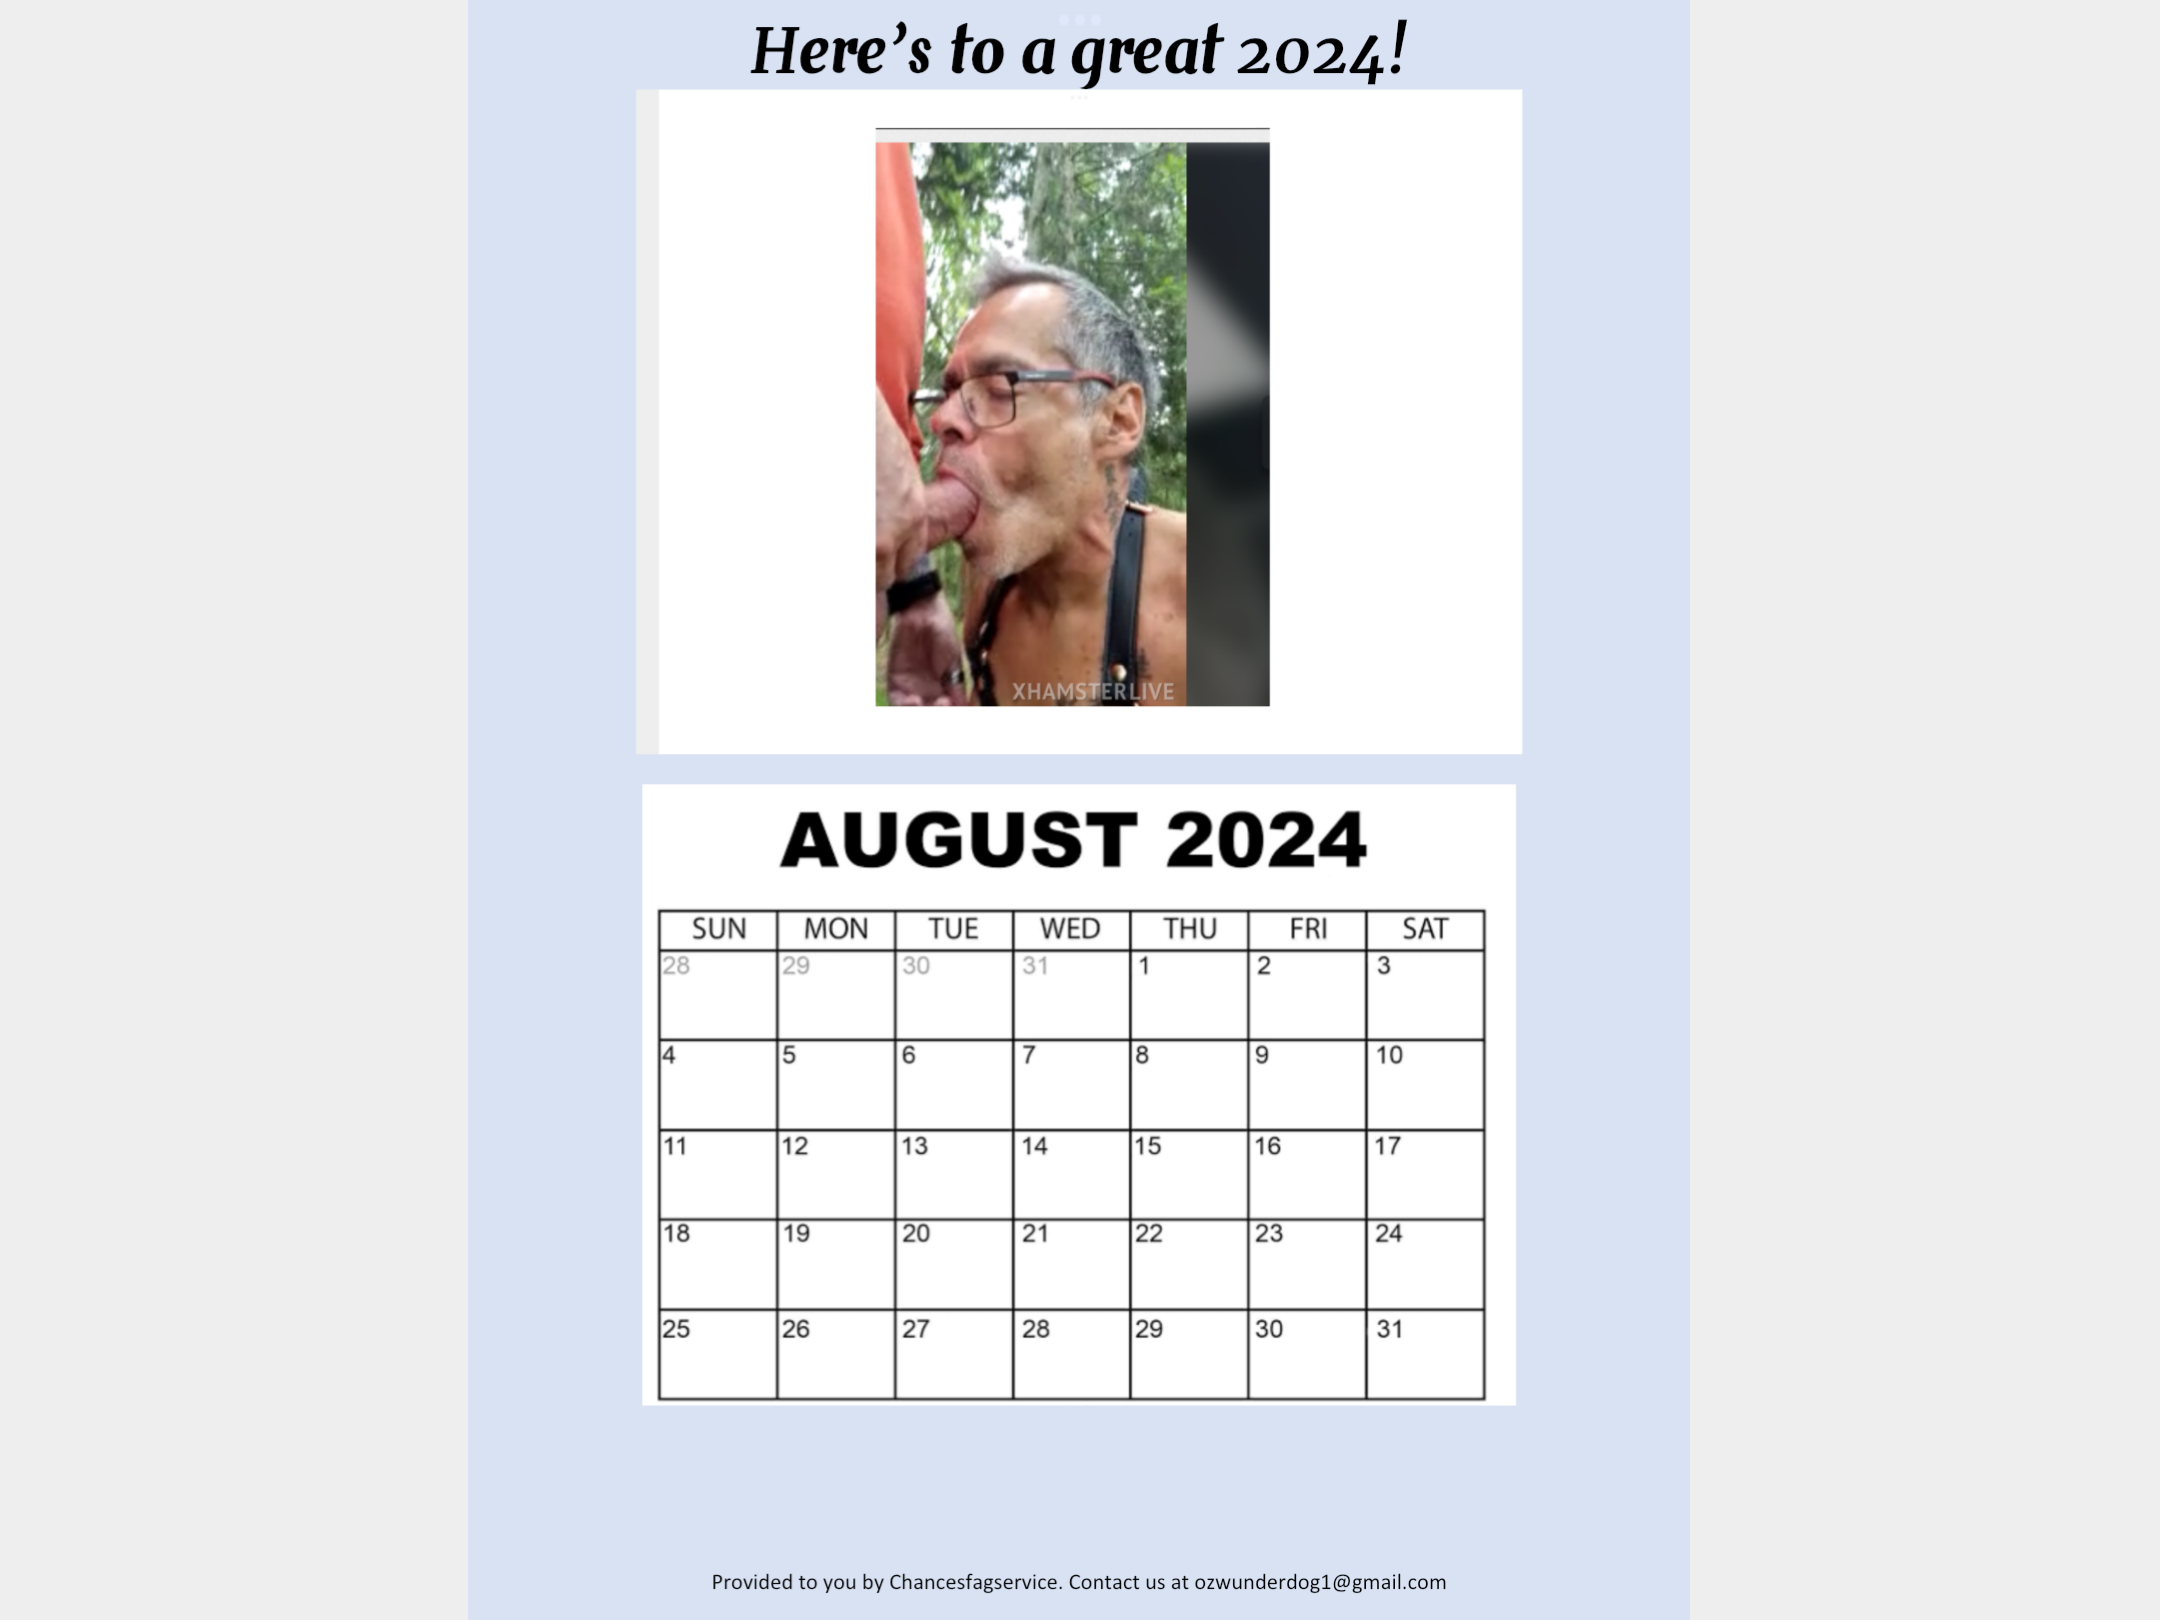 Pig f*ggots third quarter calendar for 2024